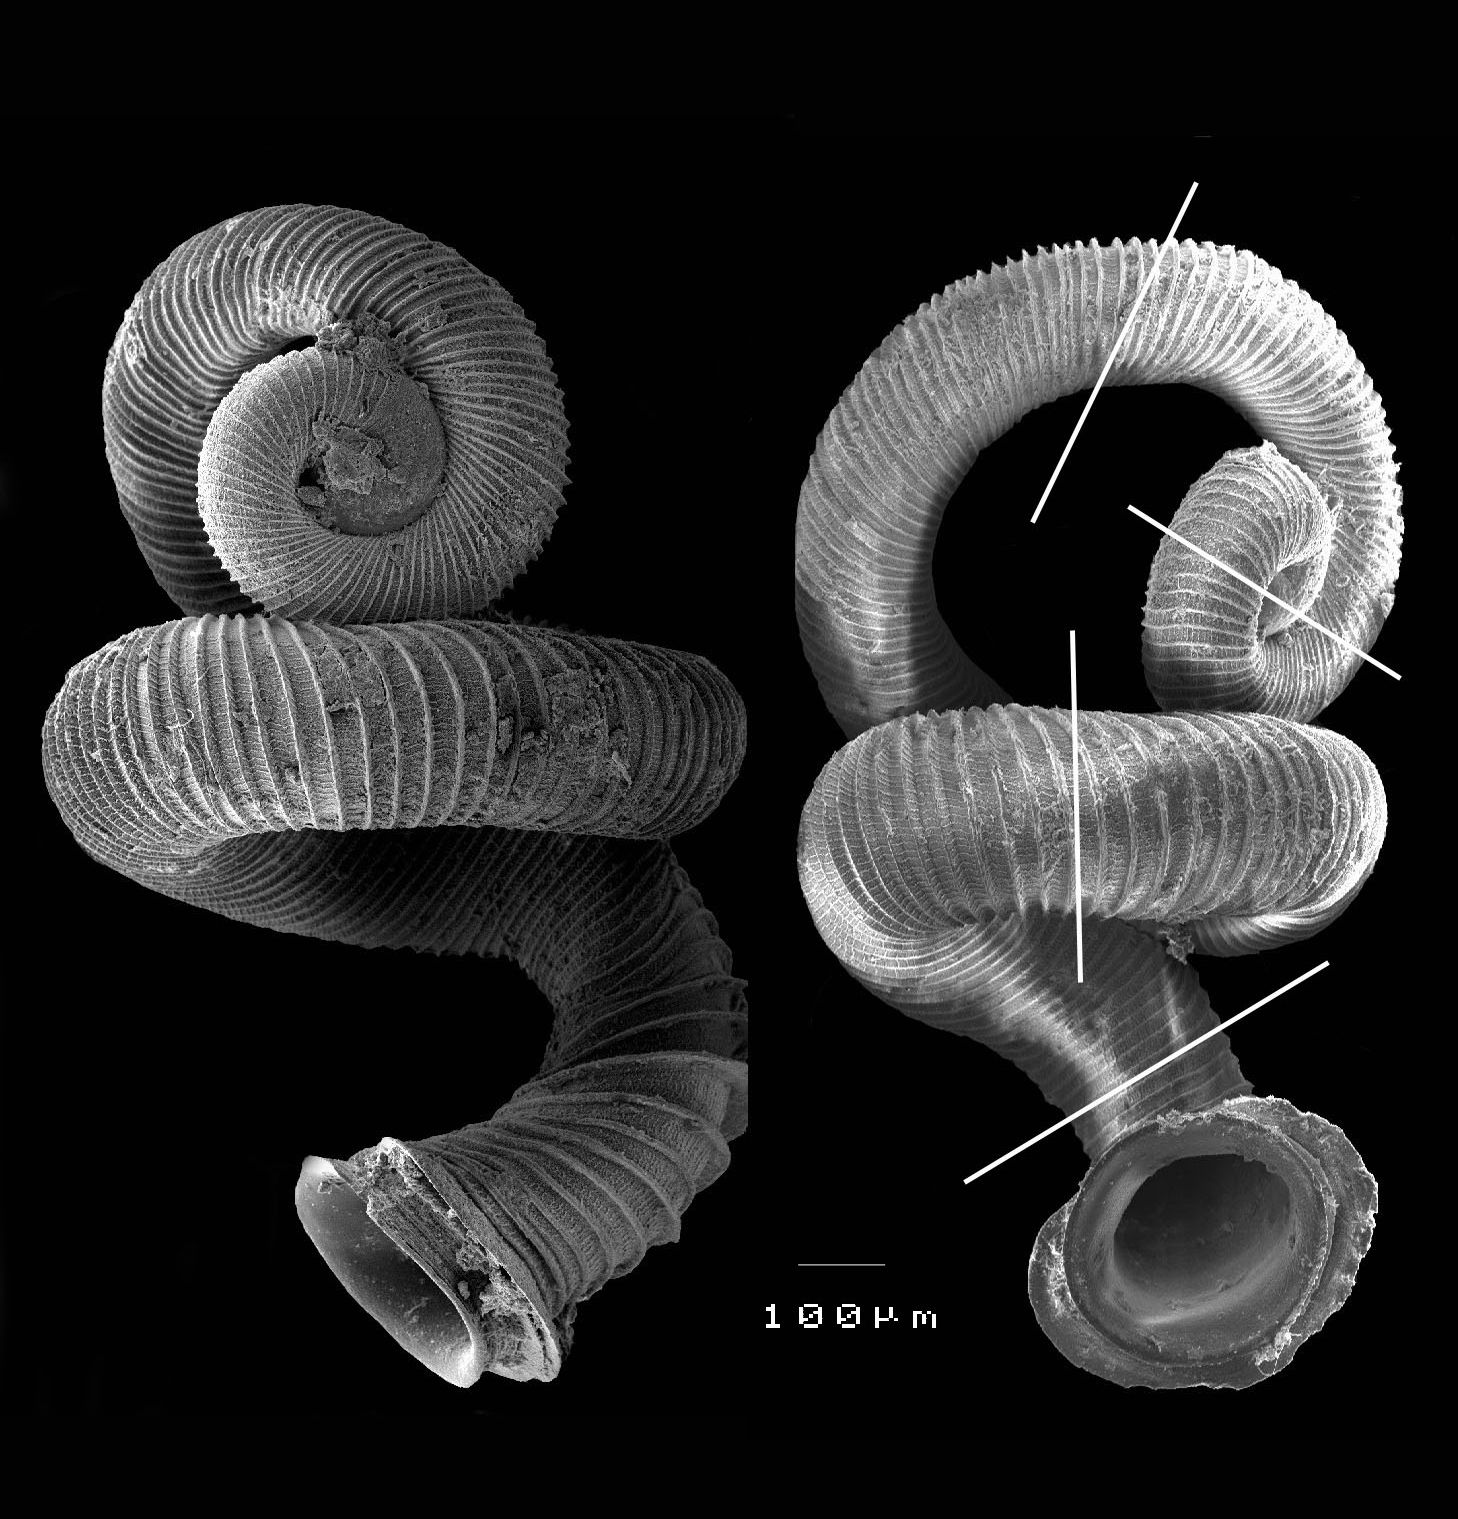 La plupart des gastéropodes, comme les escargots, sont dextres (ou dextrogyres) ou bien senestres (ou lévogyres) selon que leur coquille s'enroule vers la droite ou vers la gauche, de l'extrémité vers l'ouverture. La taille des spires suit une règle logarithmique et, au plus, on note trois axes d'enroulement. Opisthostoma vermiculum, lui, ne tourne pas rond. En regardant son étrange coquille, on remarque qu'elle s'oriente selon quatre axes... © Reuben Clements